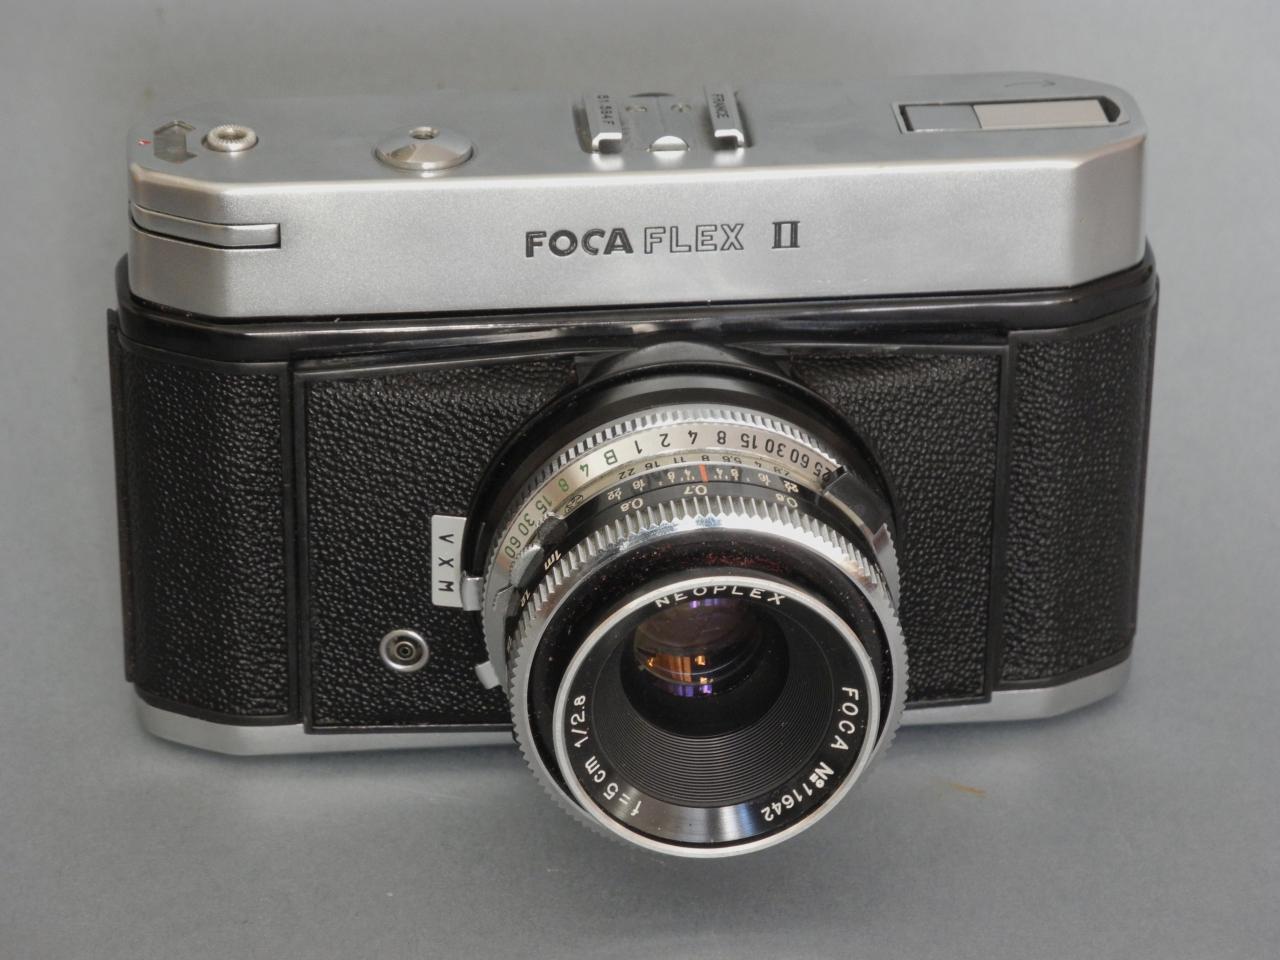 *Focaflex II 1961 objectif interchangeable*